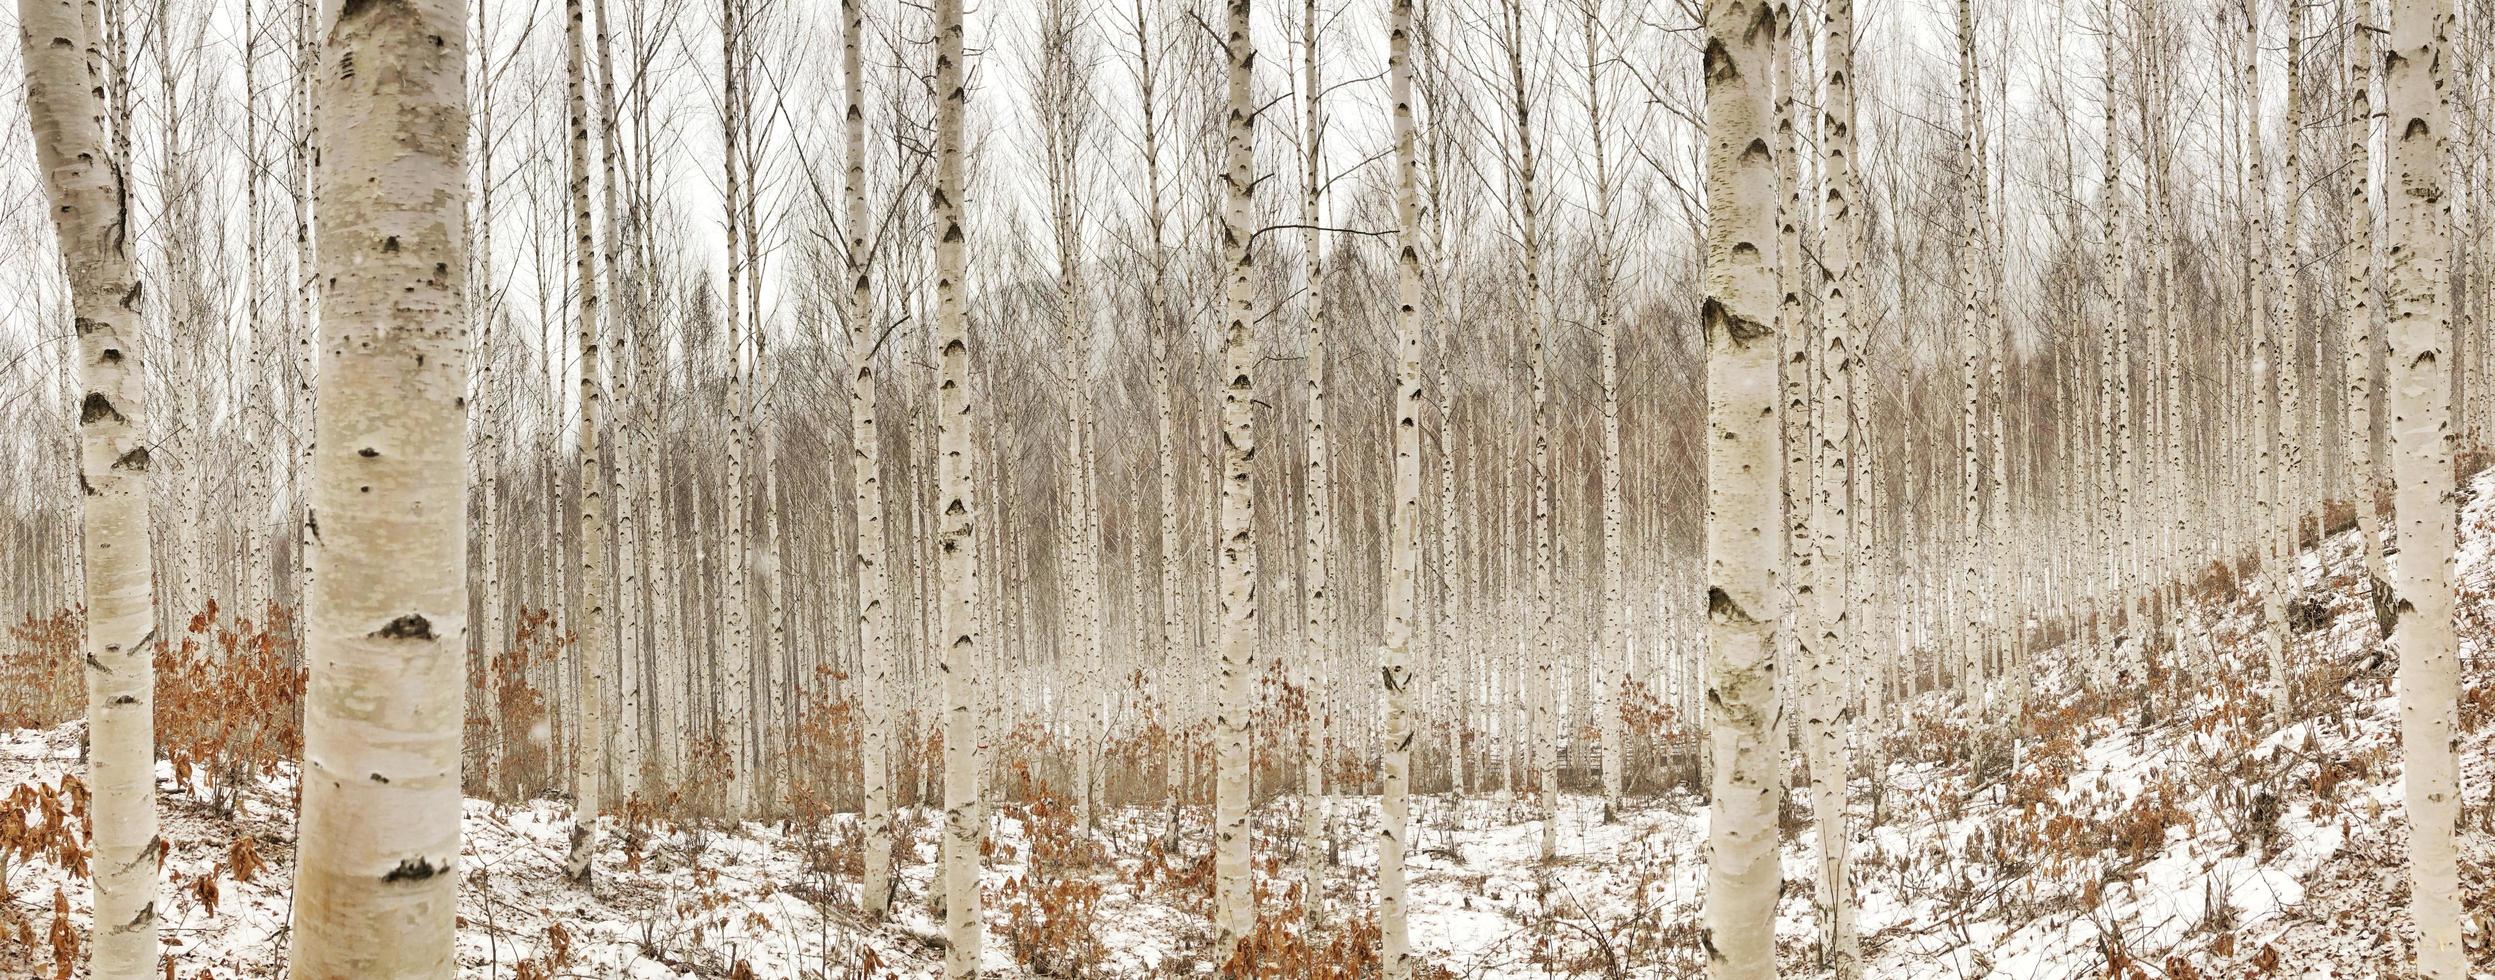 bouleaux en hiver photo